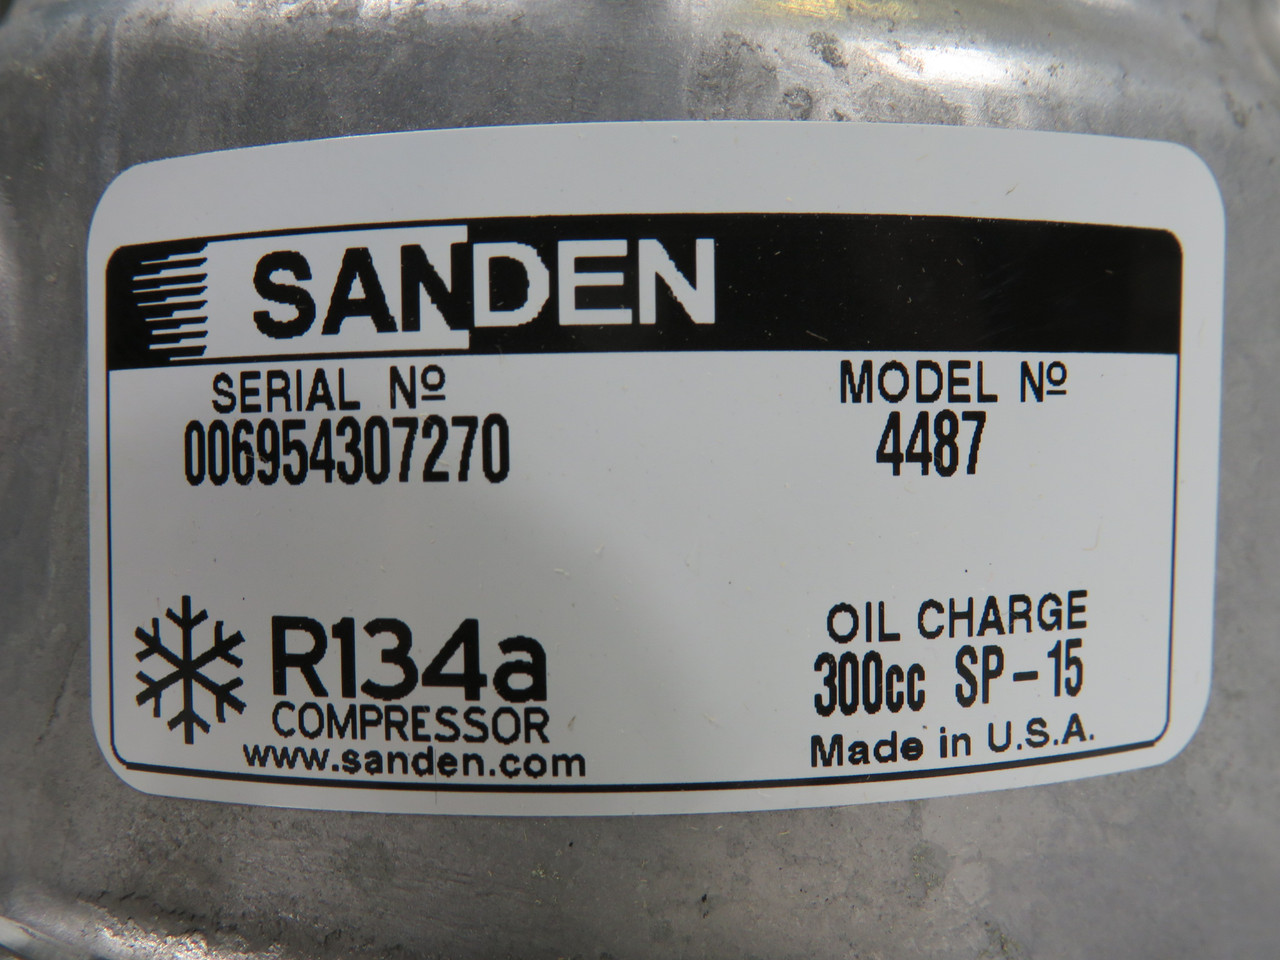 Sanden 5313 Compressor 4487 Model 7H15SHD Ear Mount 24V PV8 130mm Pulley ! NEW !